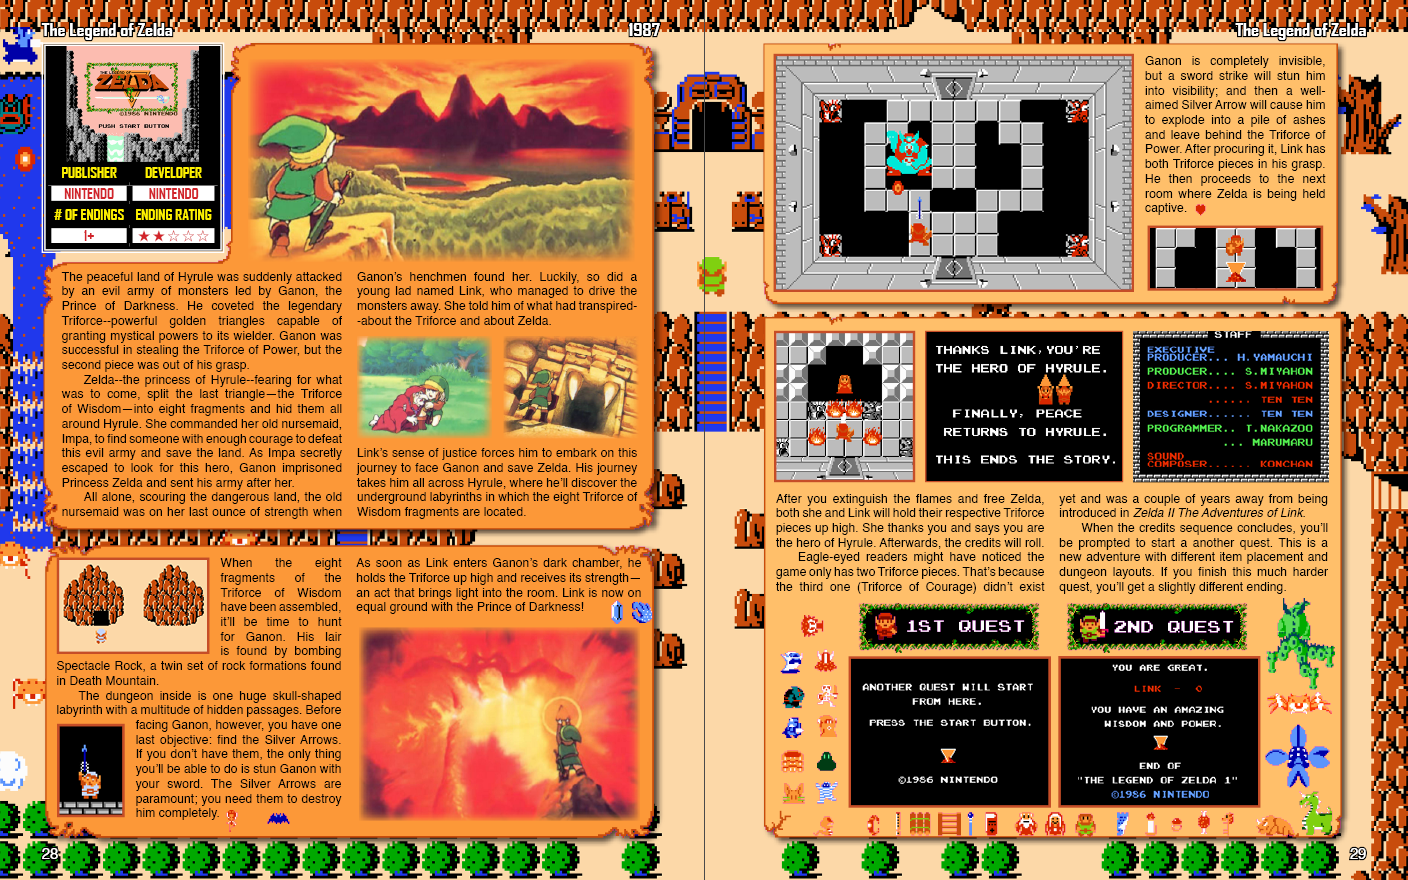 Top 100 NES Review: #3 – The Legend of Zelda (1986) – Top 100 Reviews